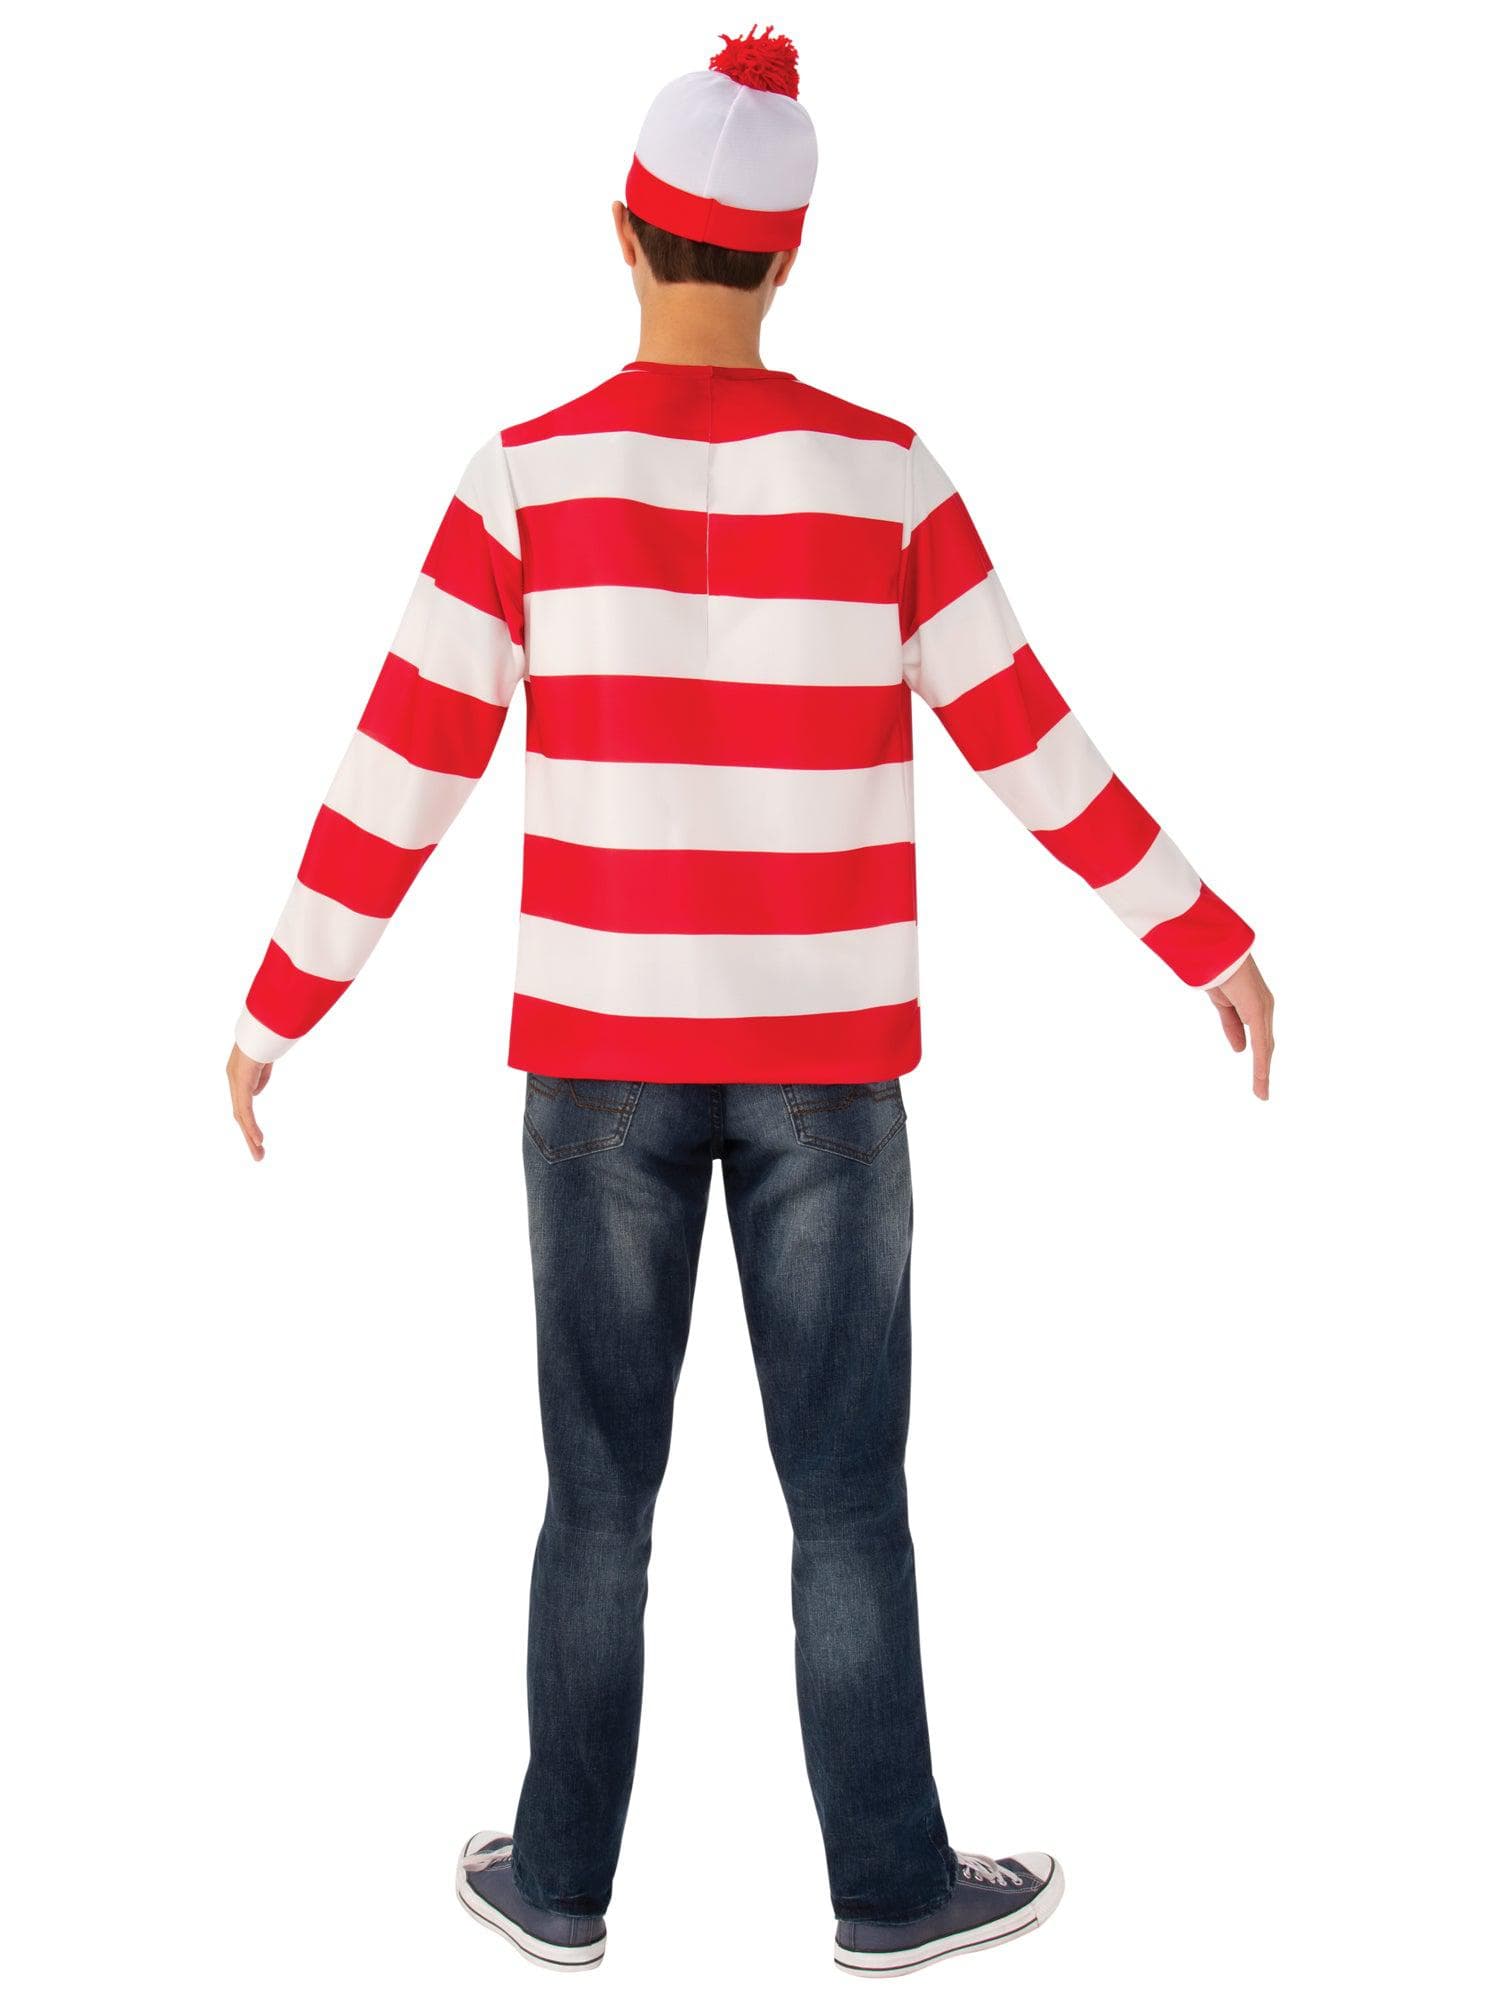 Teen Where's Waldo Costume - costumes.com